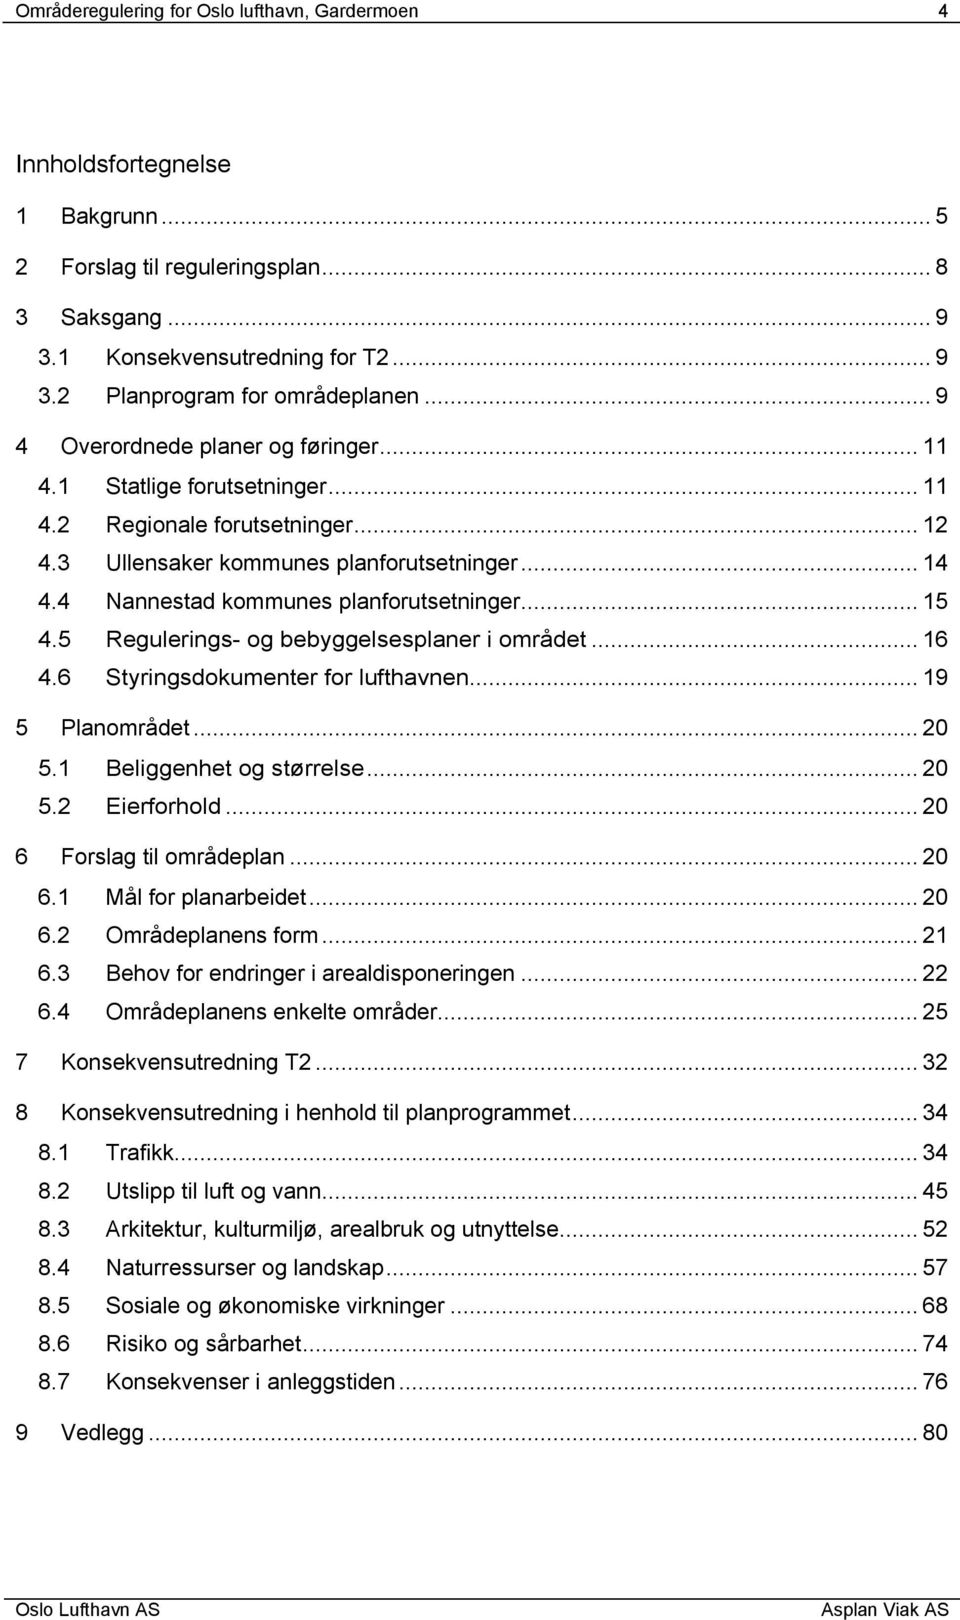 4 Nannestad kommunes planforutsetninger... 15 4.5 Regulerings- og bebyggelsesplaner i området... 16 4.6 Styringsdokumenter for lufthavnen... 19 5 Planområdet... 20 5.1 Beliggenhet og størrelse... 20 5.2 Eierforhold.